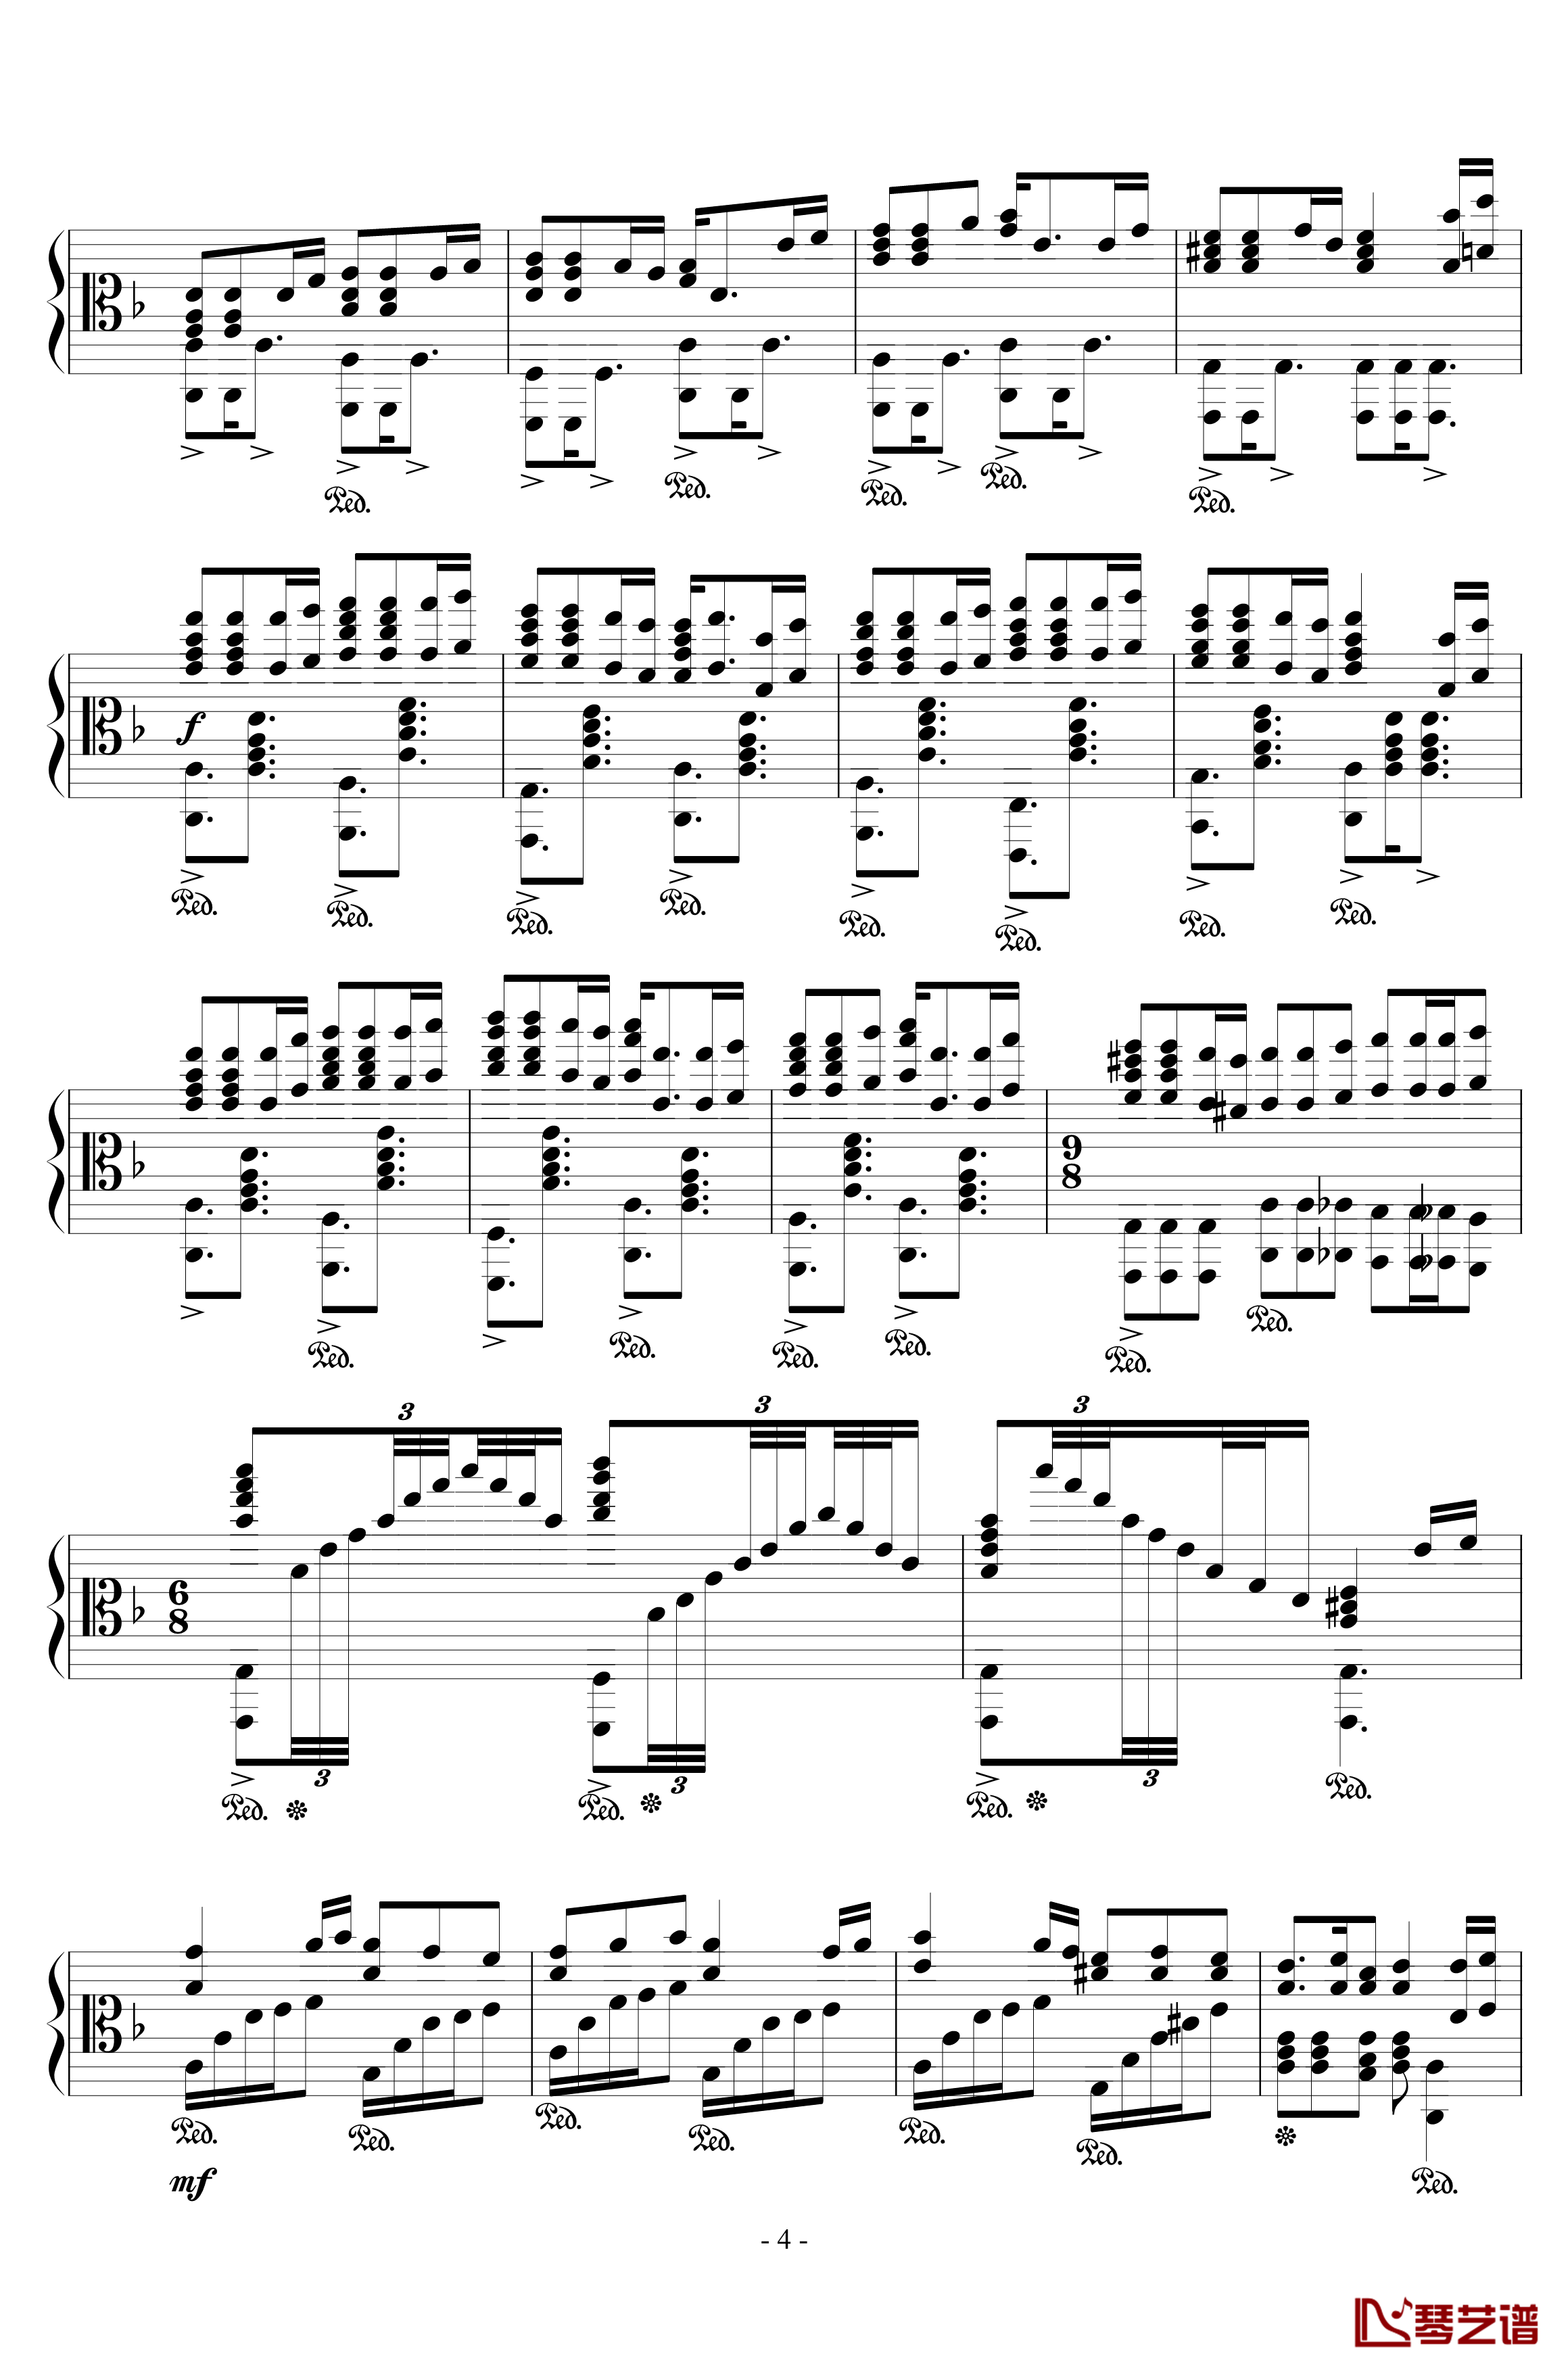 加勒比海盗钢琴谱-混合版-Hans Zimmer4